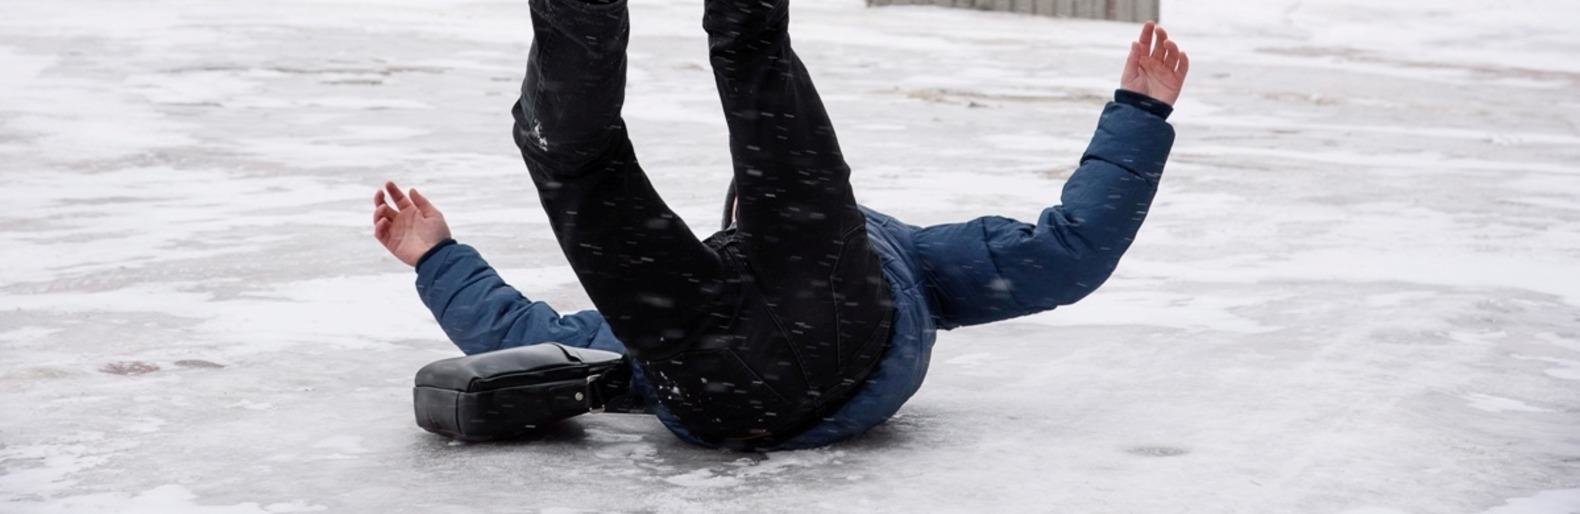 Гололед. Поскользнулся на льду. Человек падает на льду.